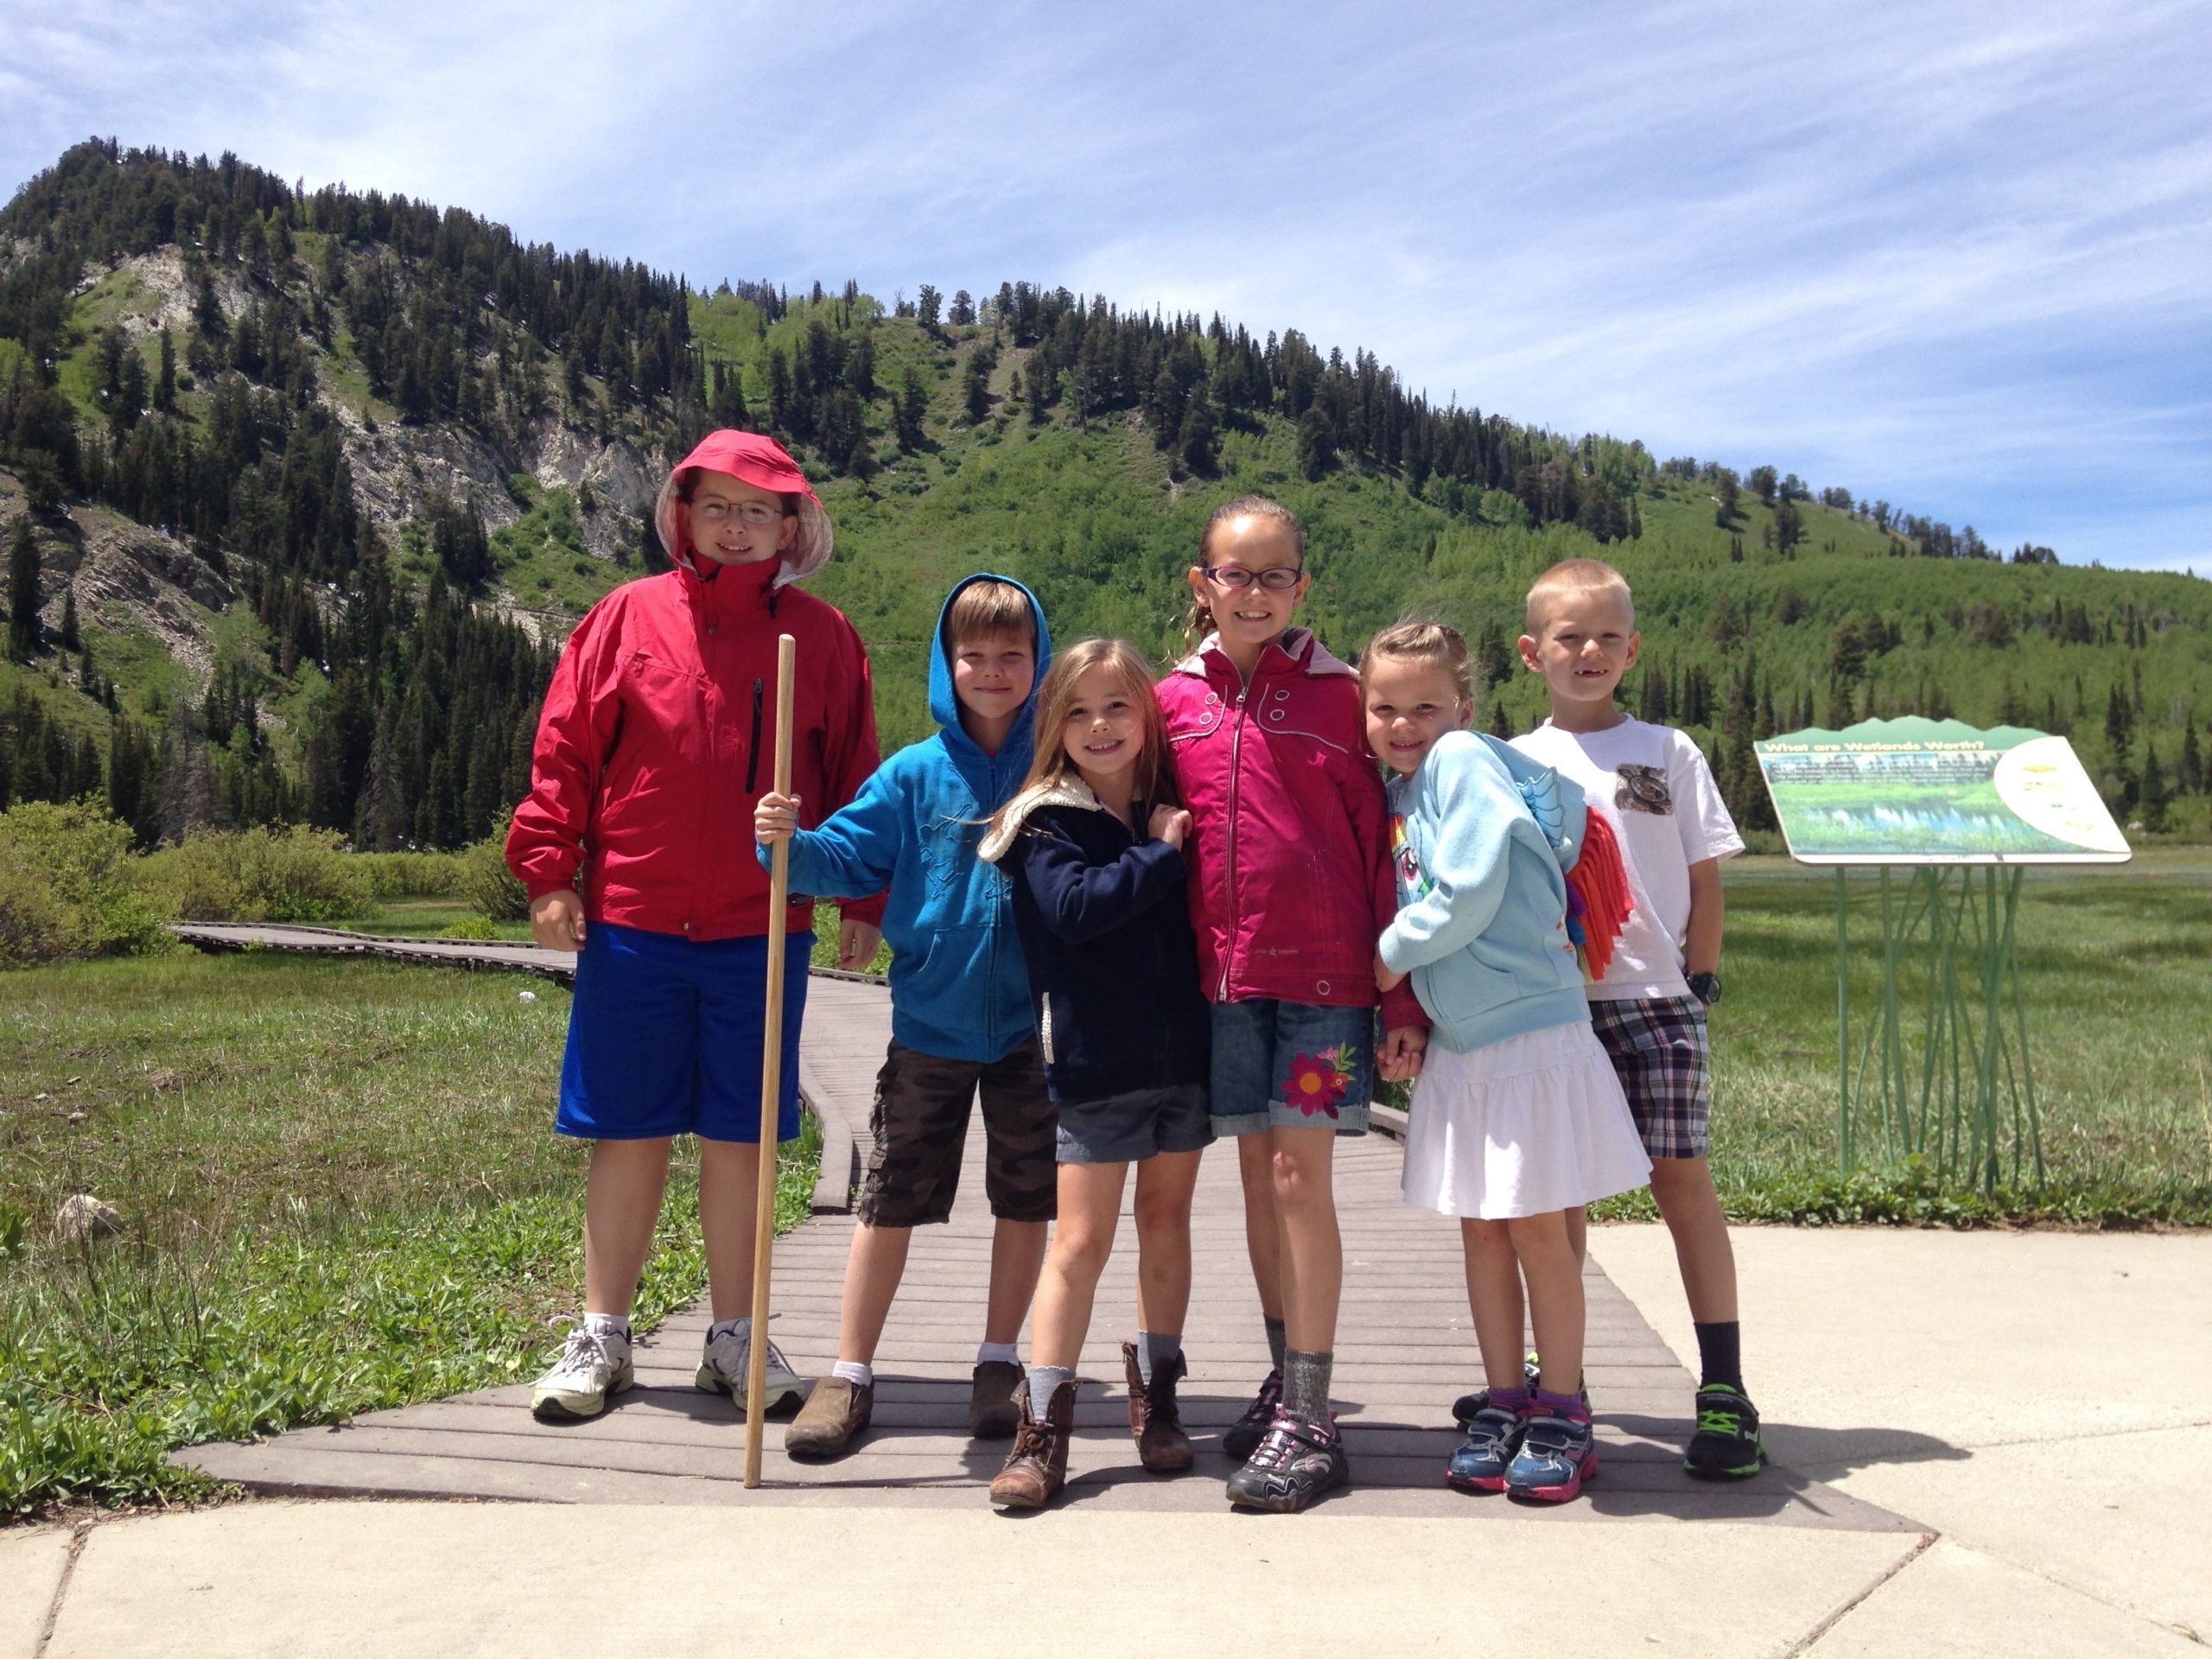 A group of kids at silver lake, utah